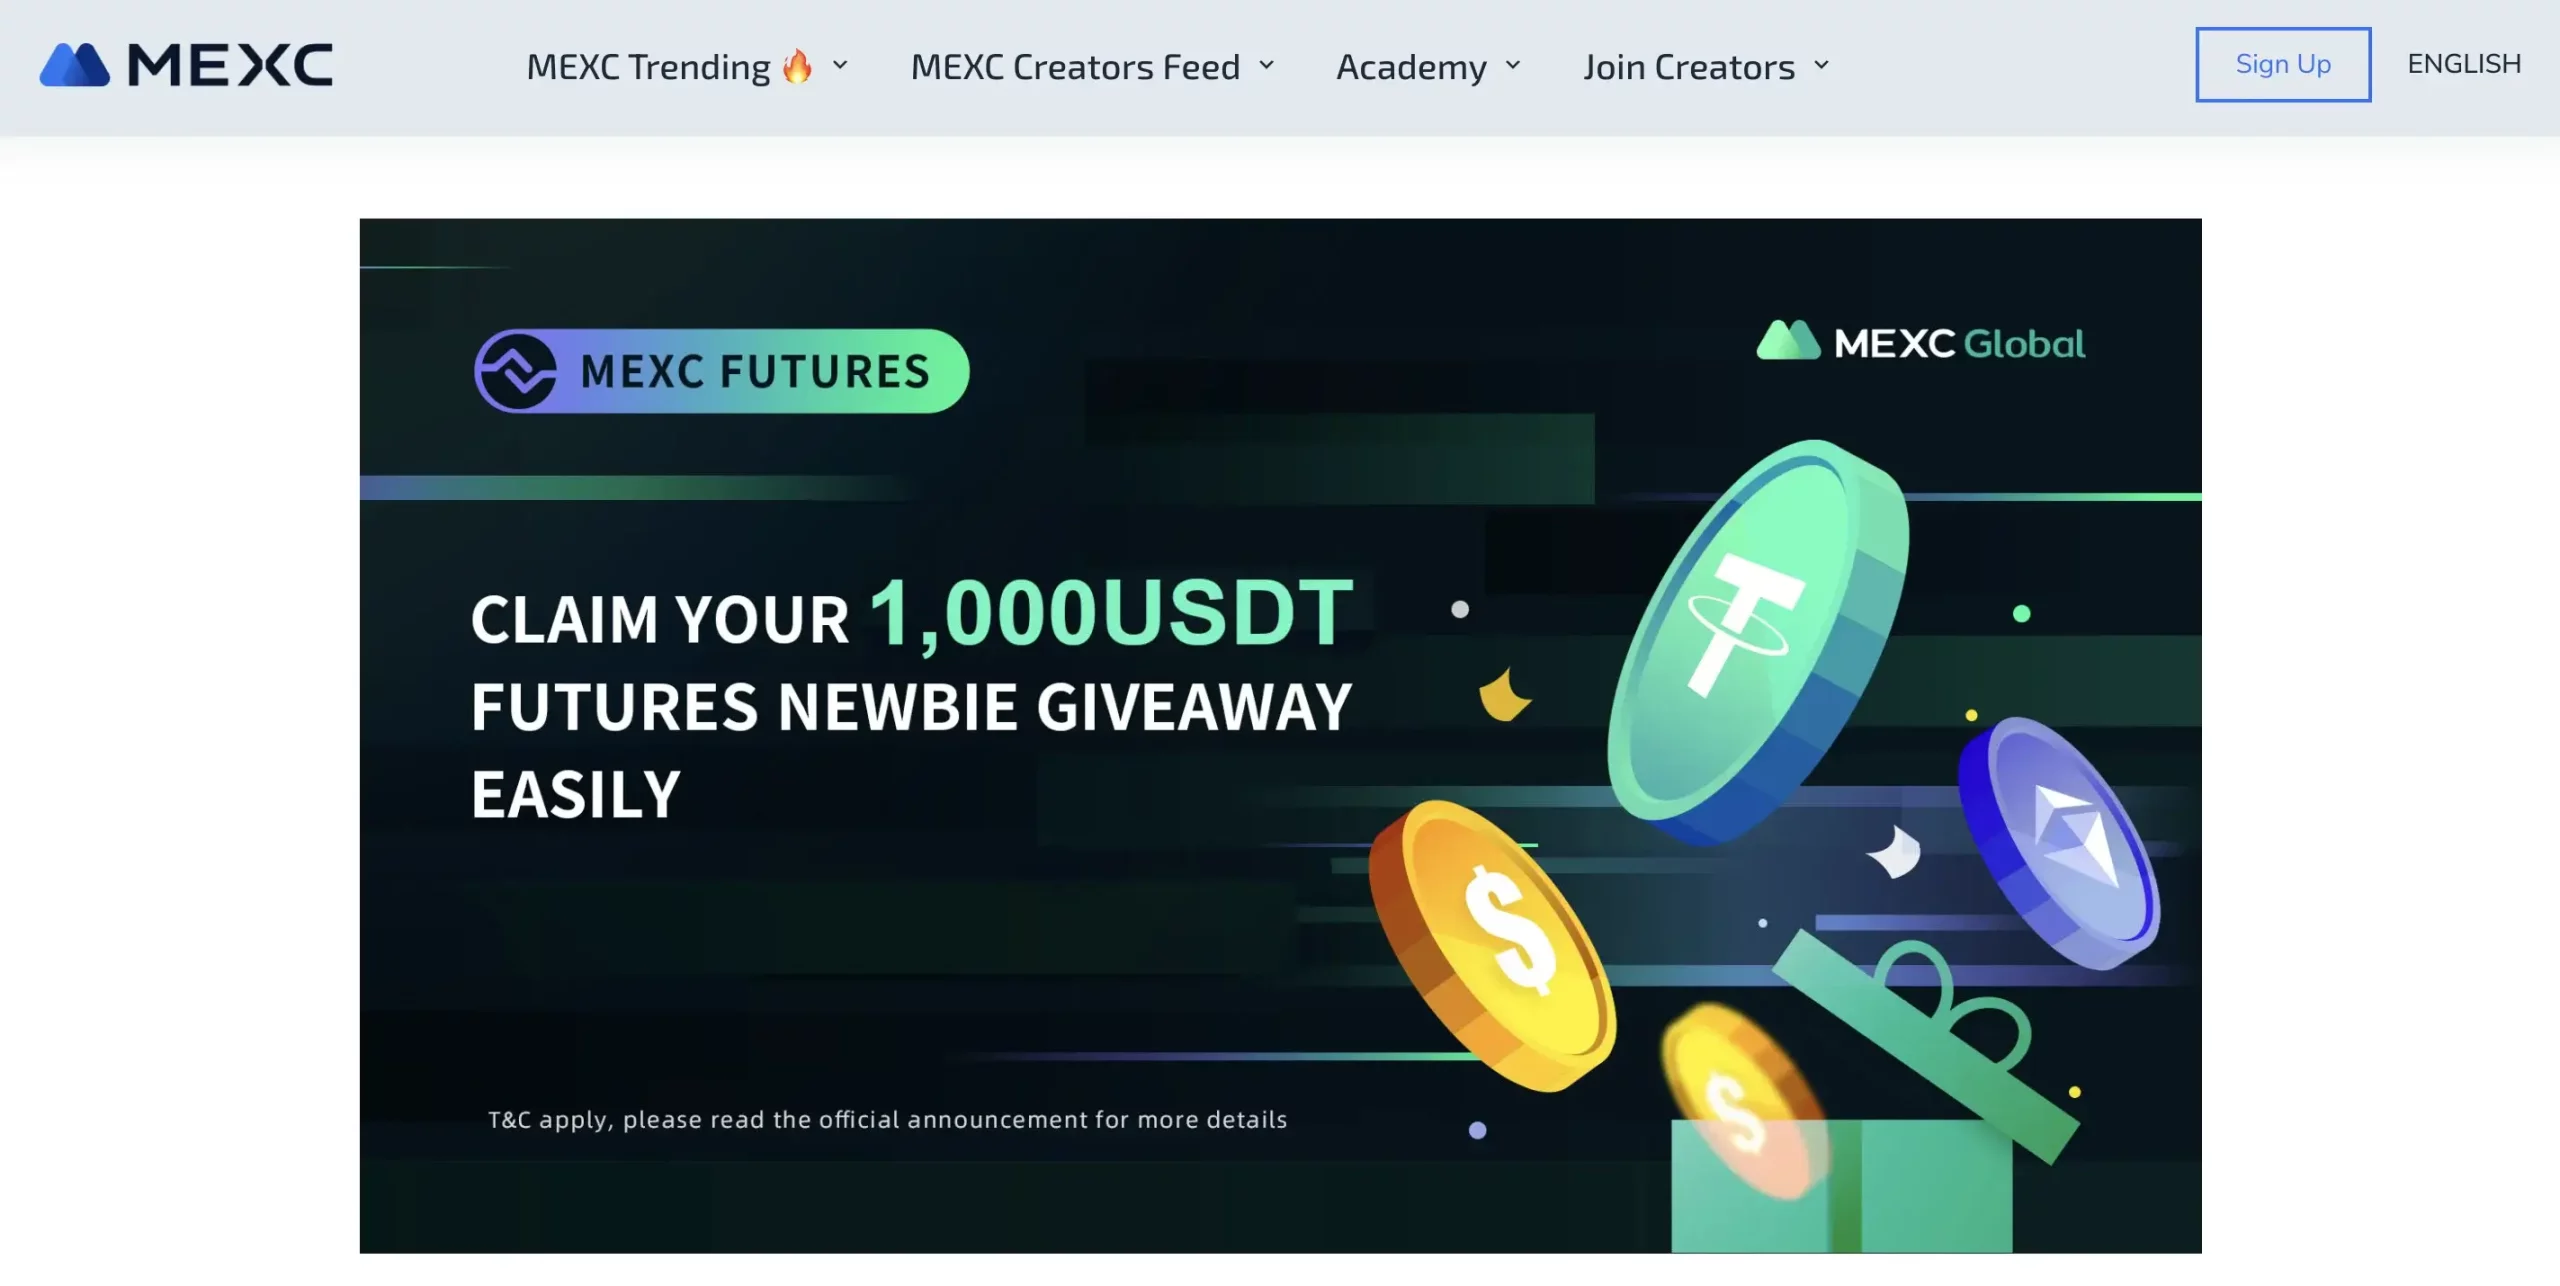 10. MEXC - Up to 1,000 USDT Crypto Sign Up Bonus